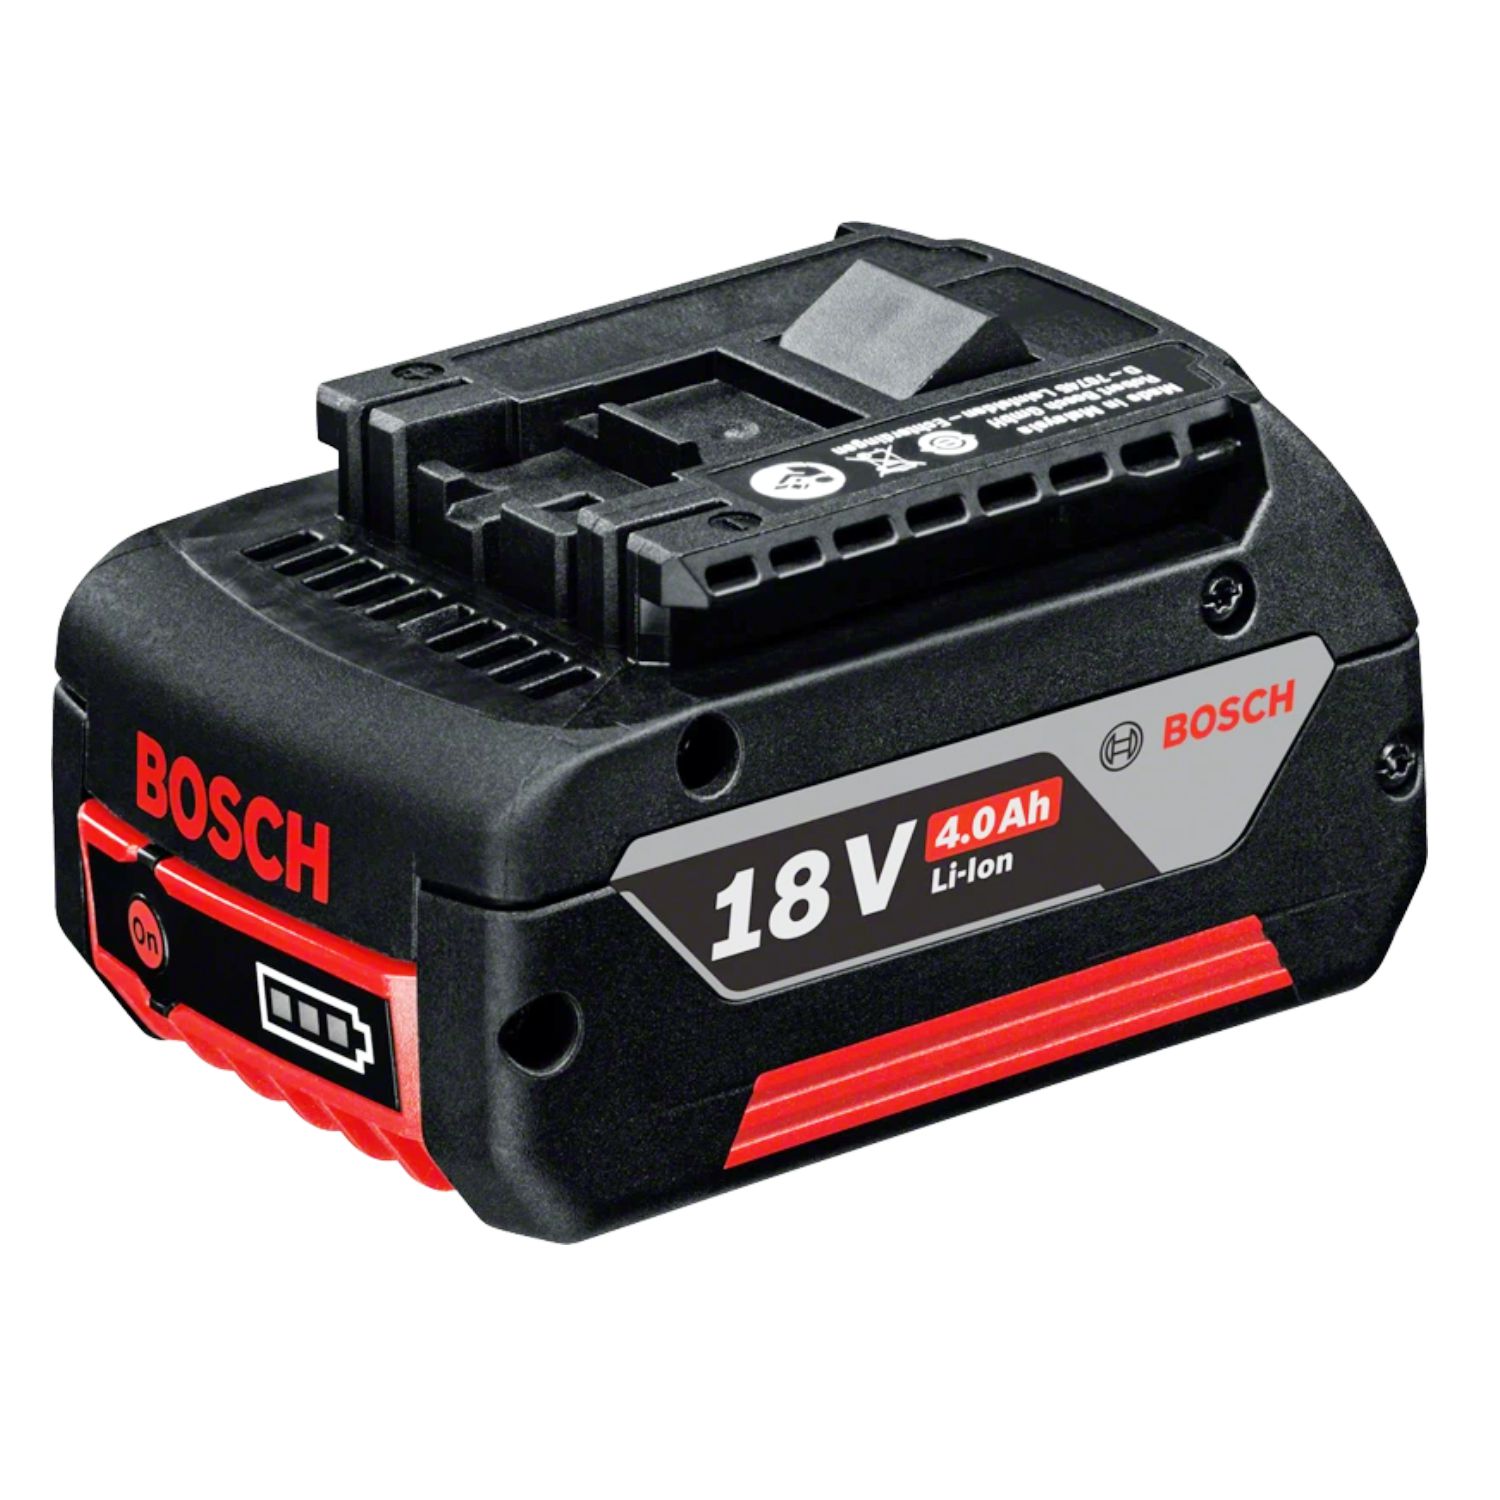 Bosch Akku 2607336816 mit 18V 4,0Ah Li-Ion